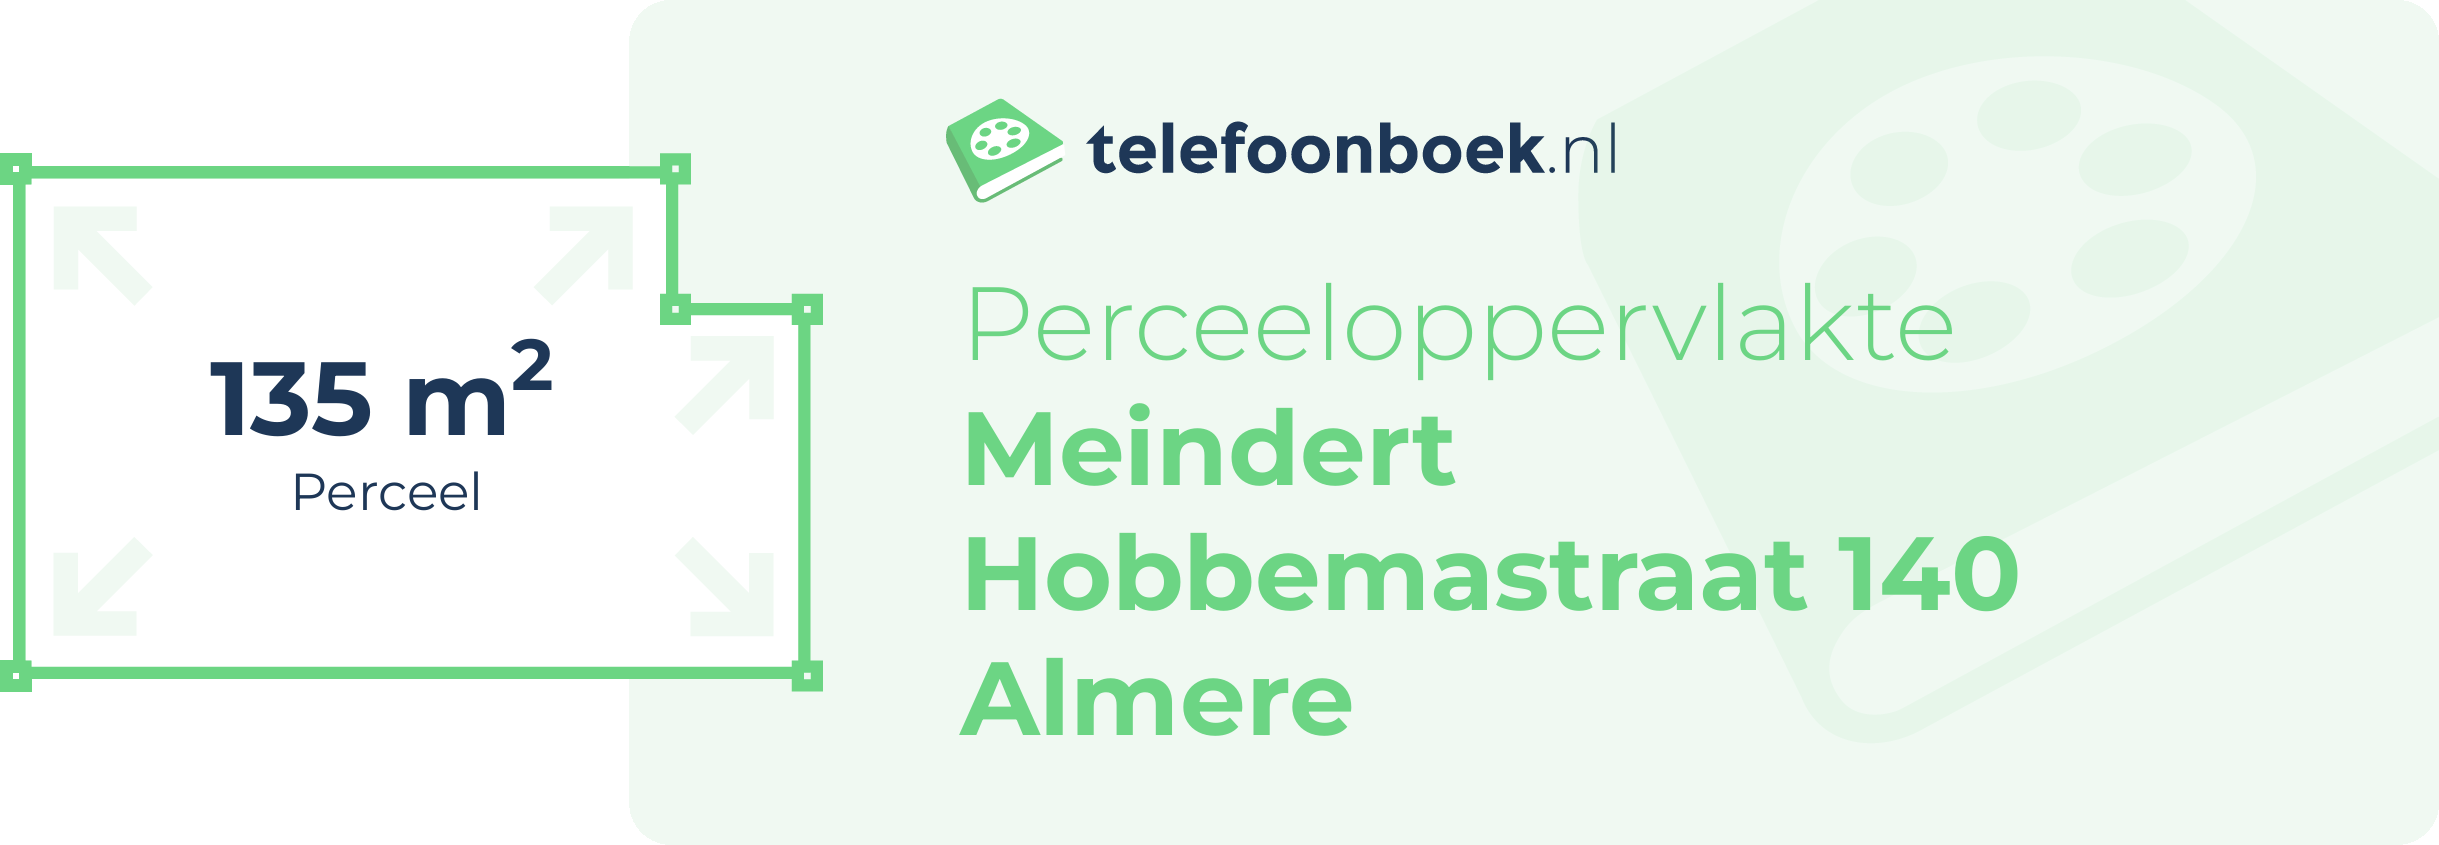 Perceeloppervlakte Meindert Hobbemastraat 140 Almere